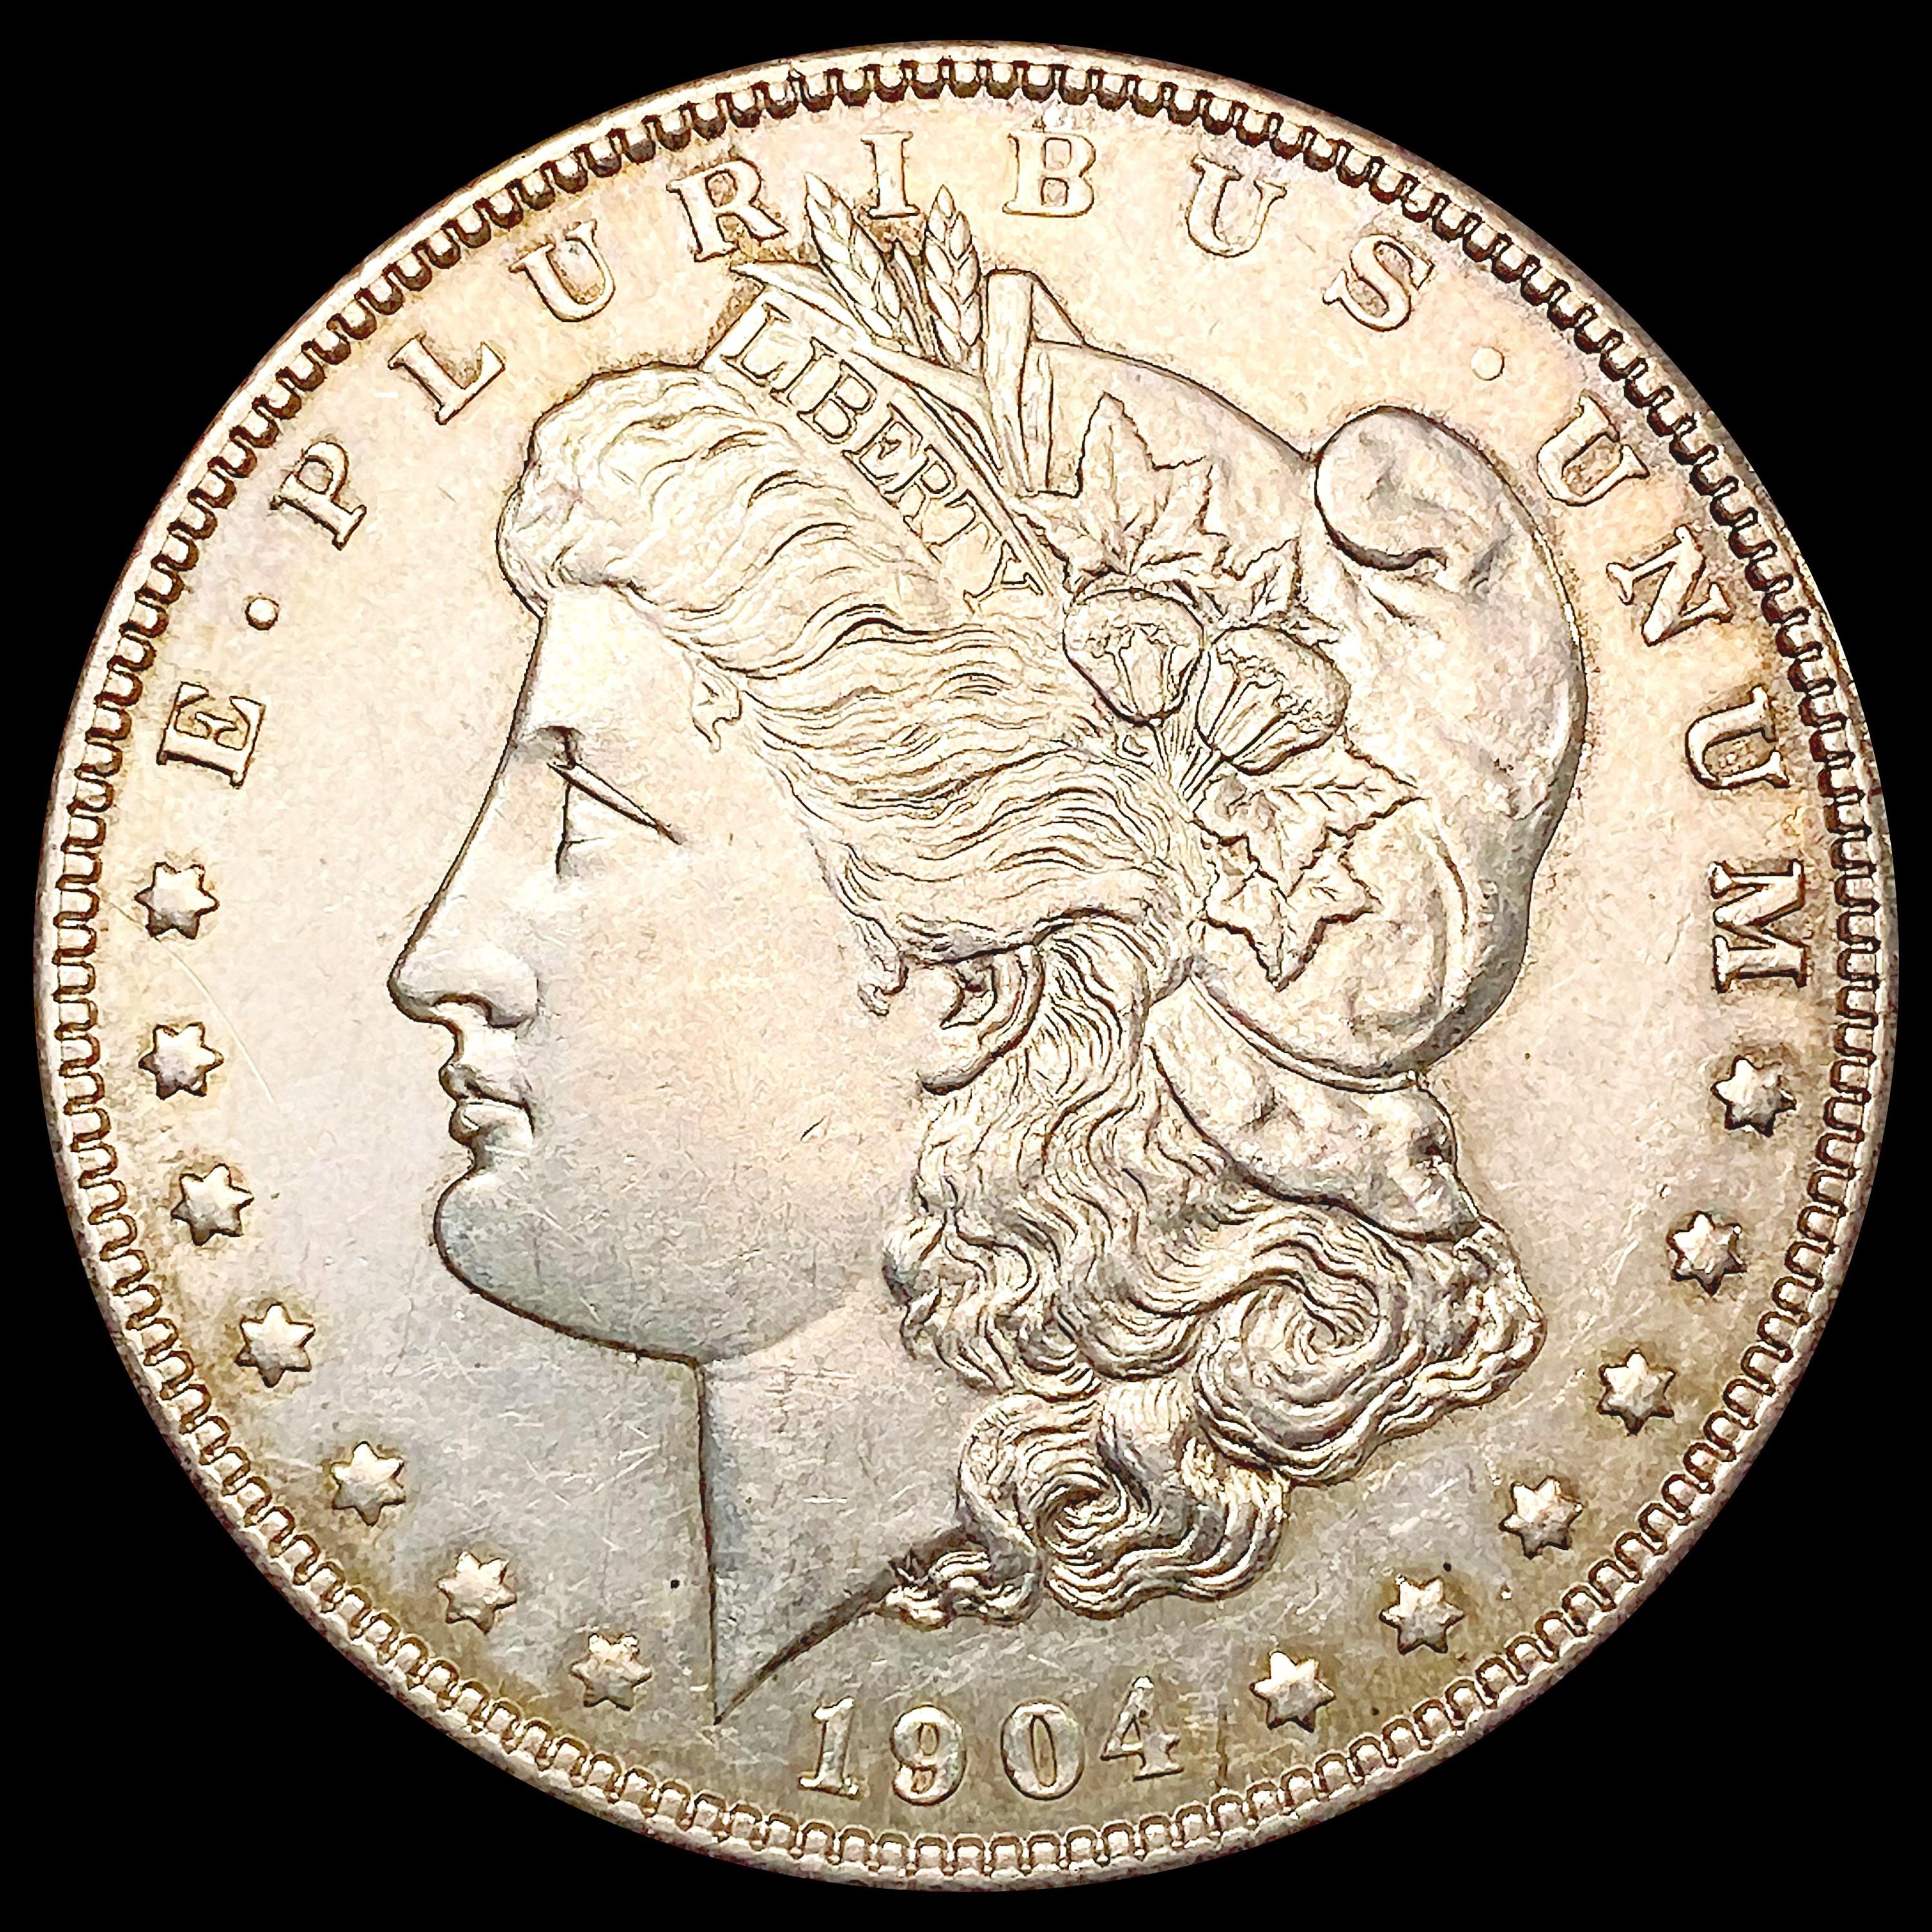 1904 Morgan Silver Dollar CHOICE AU